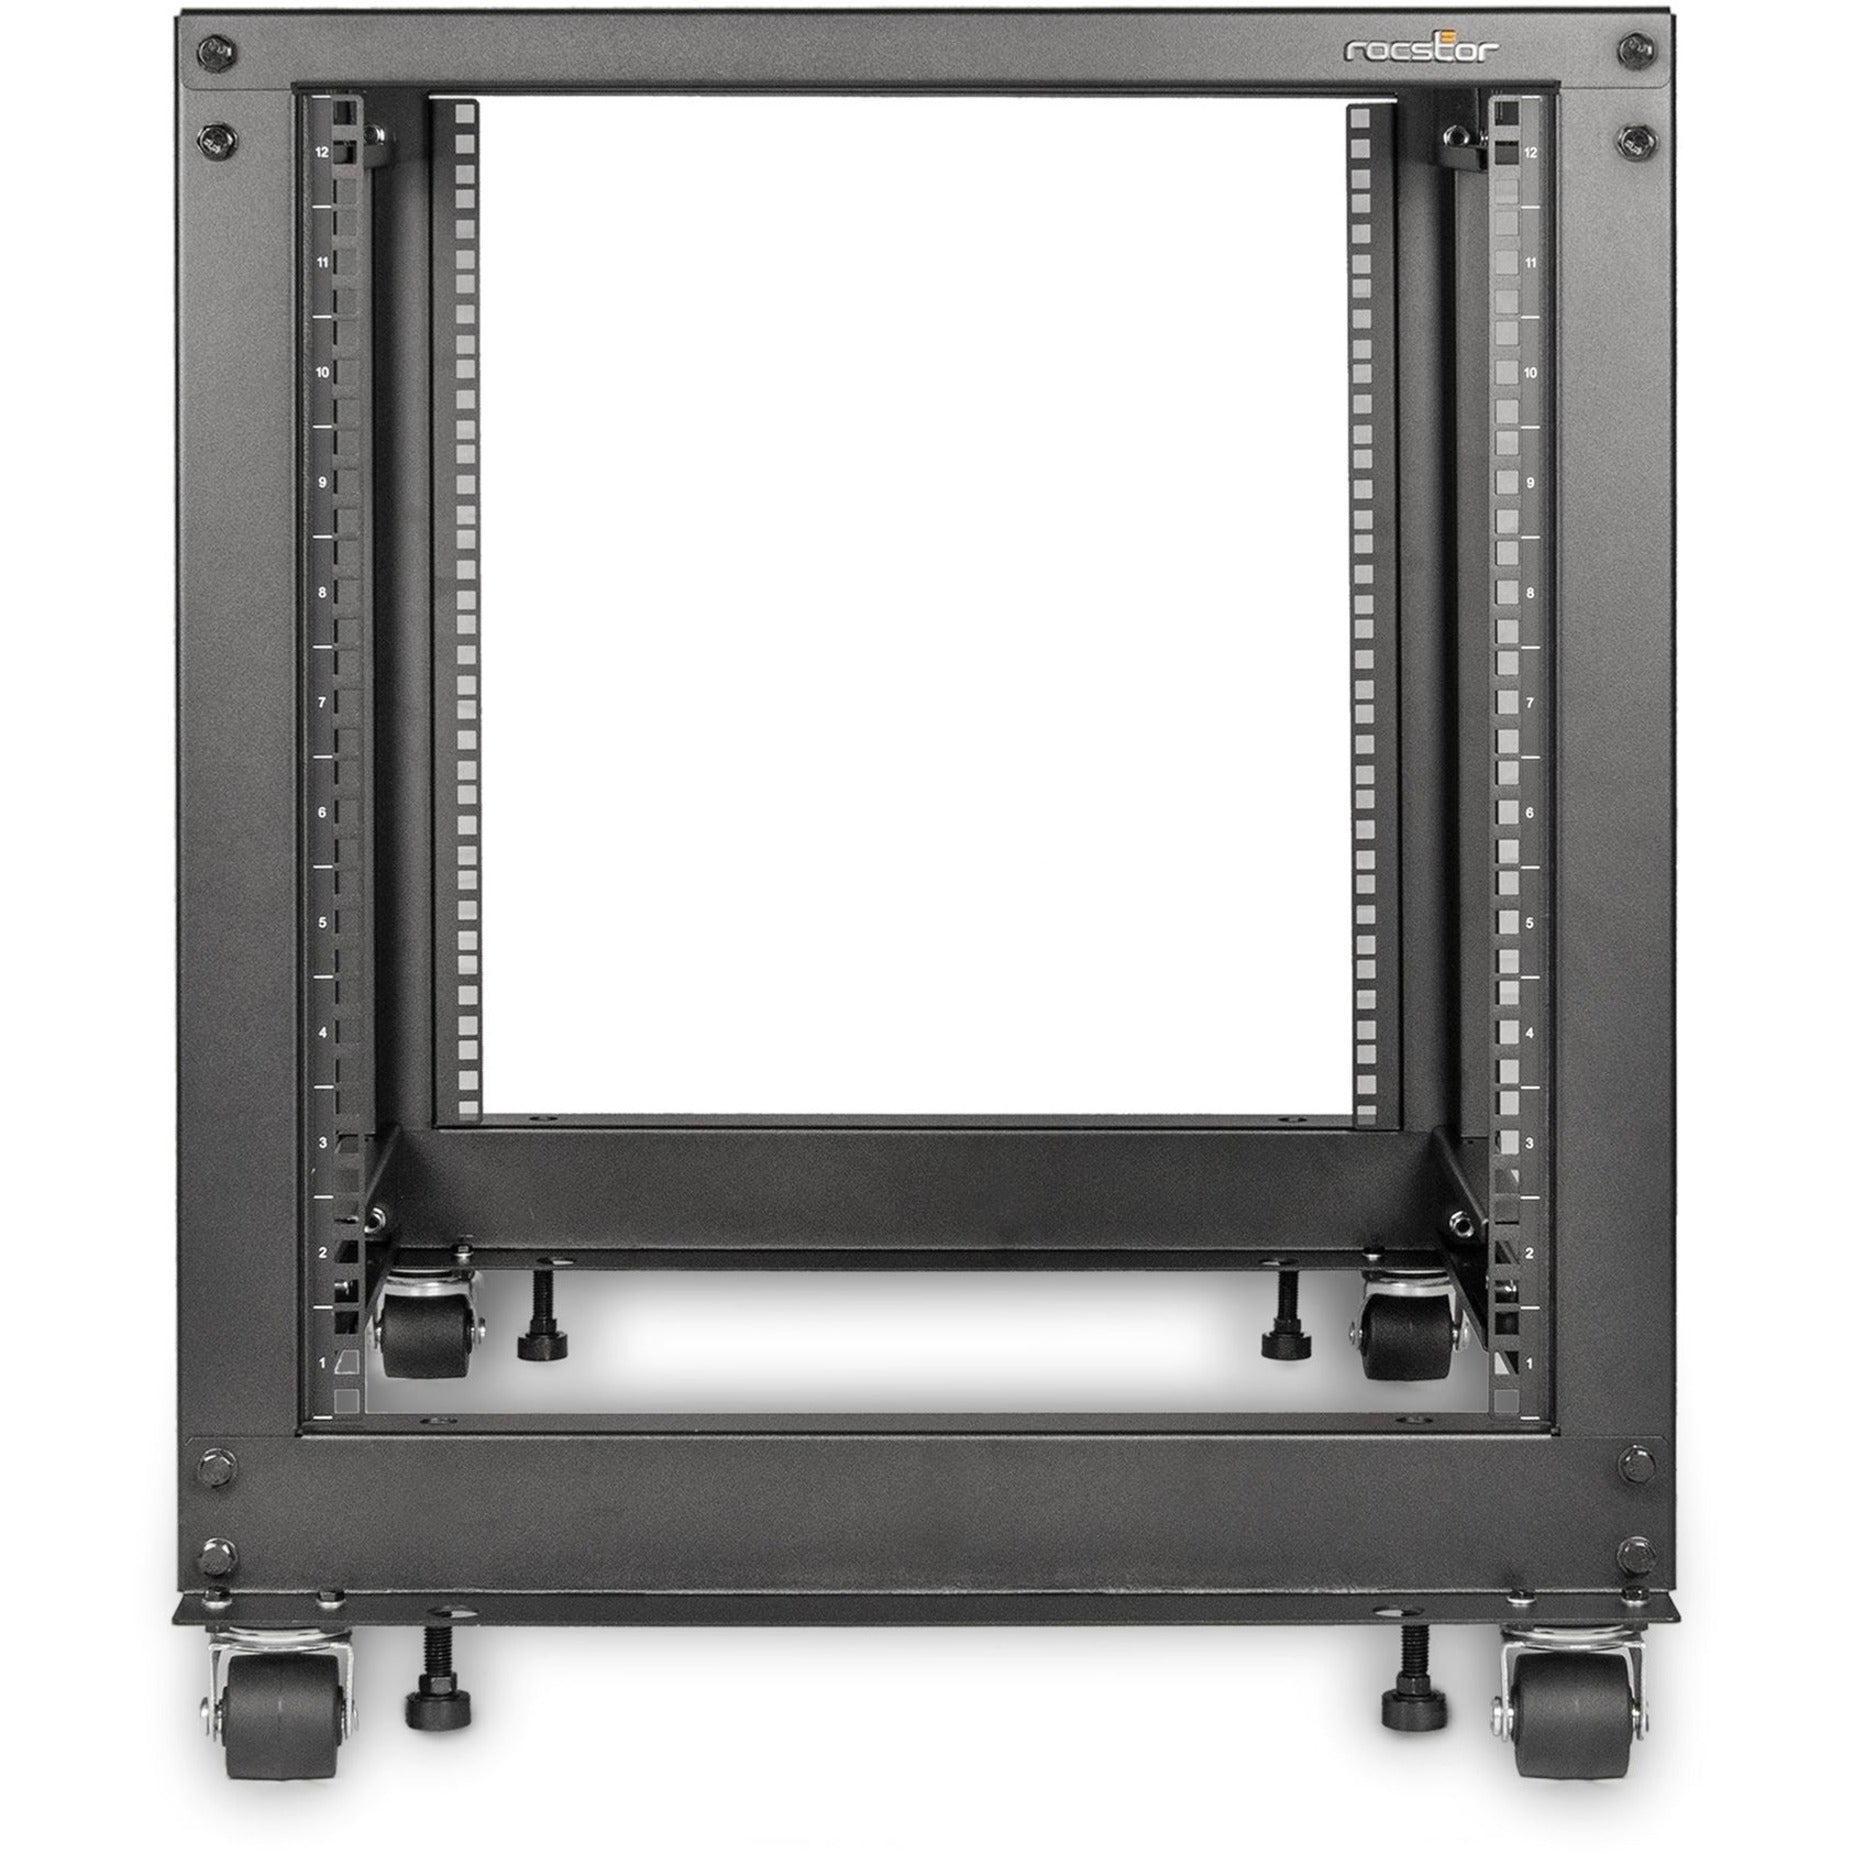 Rocstor Y10E008-B1 SolidRack Rack Frame, 12U Open Frame, Adjustable Depth, Black